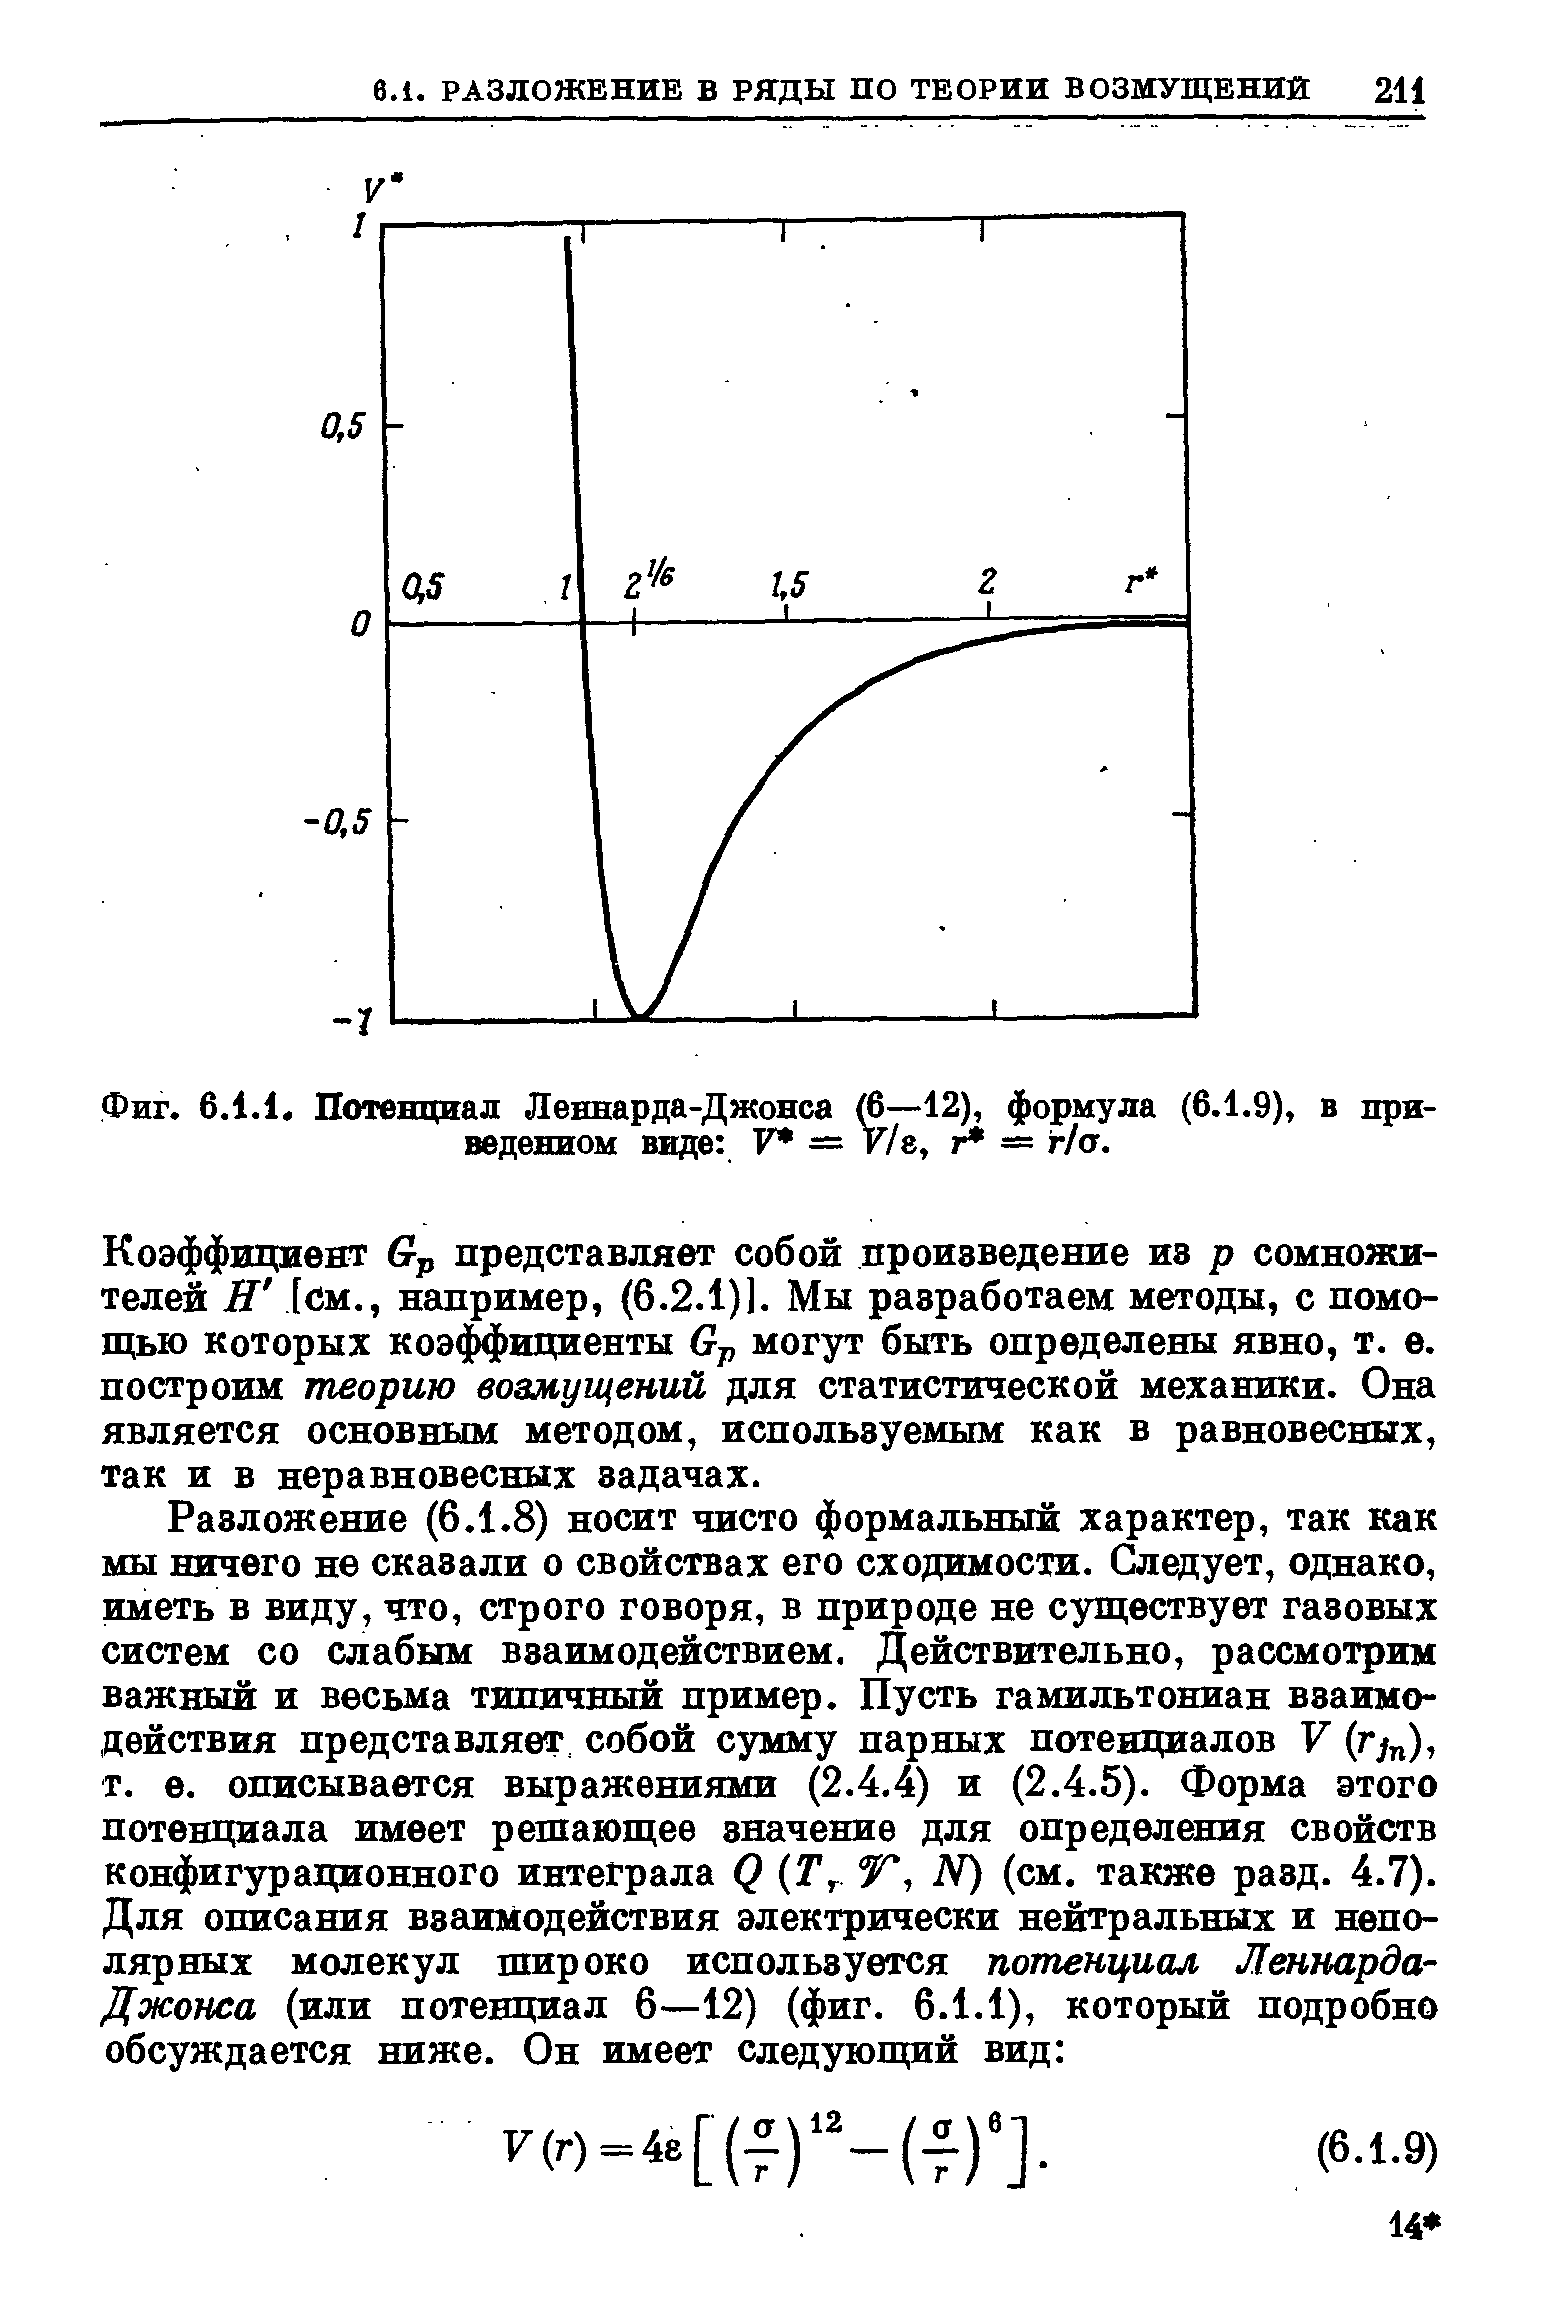 Фиг. 6.1.1. <a href="/info/3848">Потенциал Леннарда-Джонса</a> (6—12), формула (6.1.9), в приведенном виде V — У/е, = г/а.
